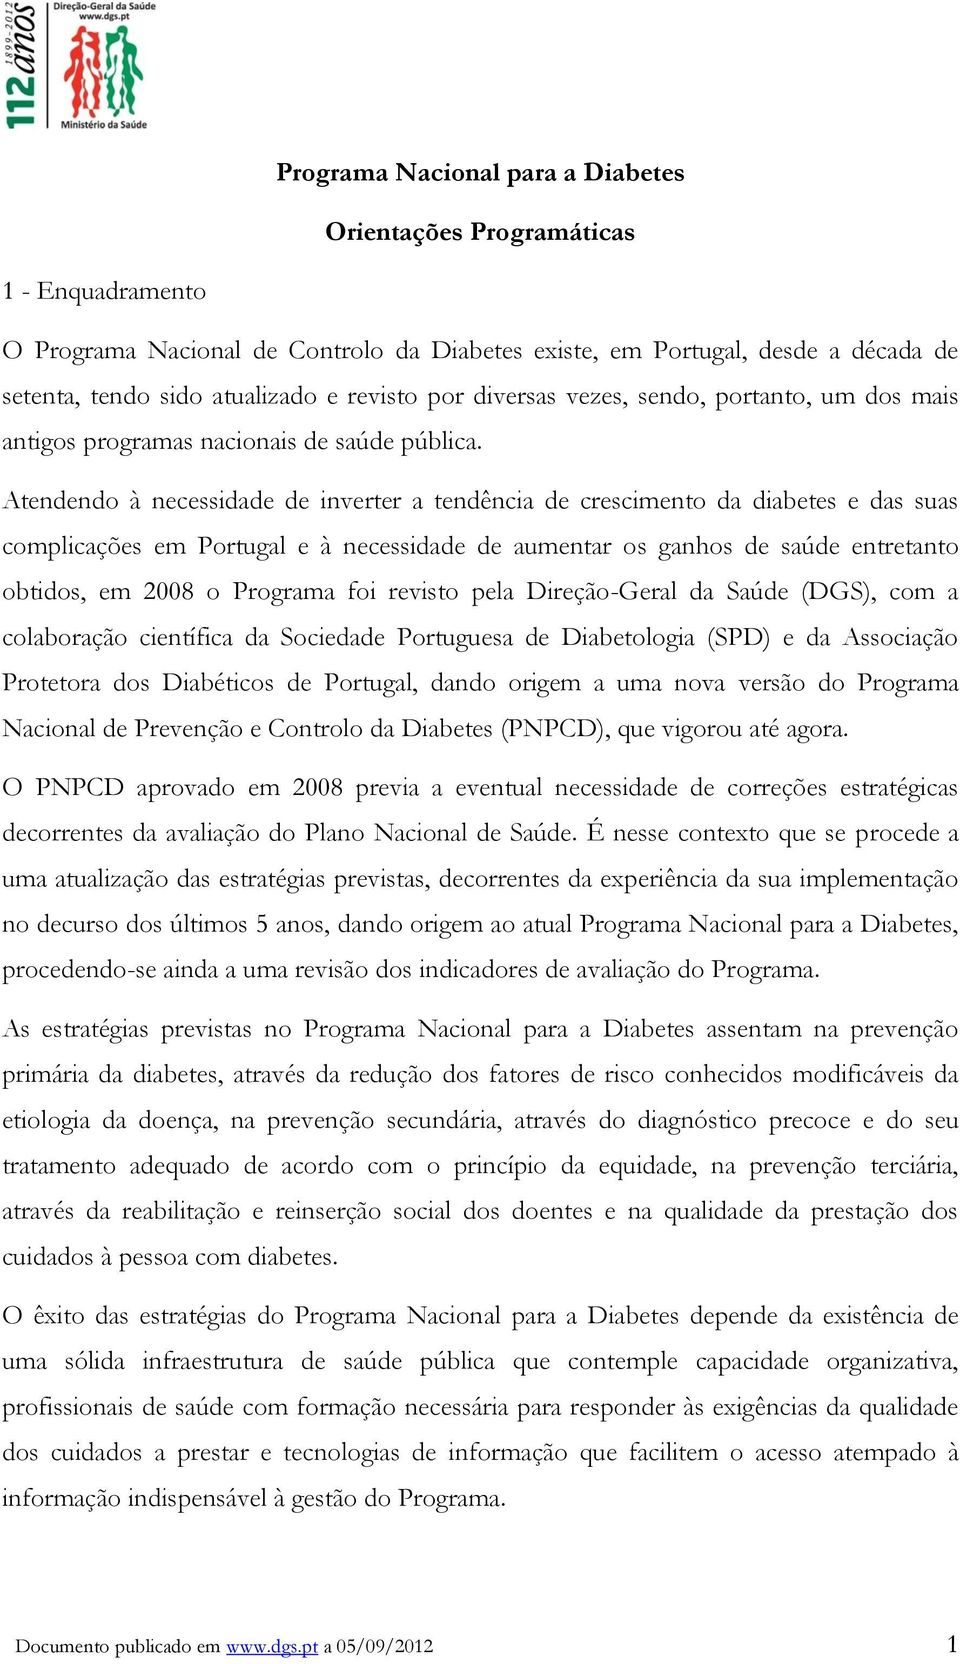 Atendendo à necessidade de inverter a tendência de crescimento da diabetes e das suas complicações em Portugal e à necessidade de aumentar os ganhos de saúde entretanto obtidos, em 2008 o Programa